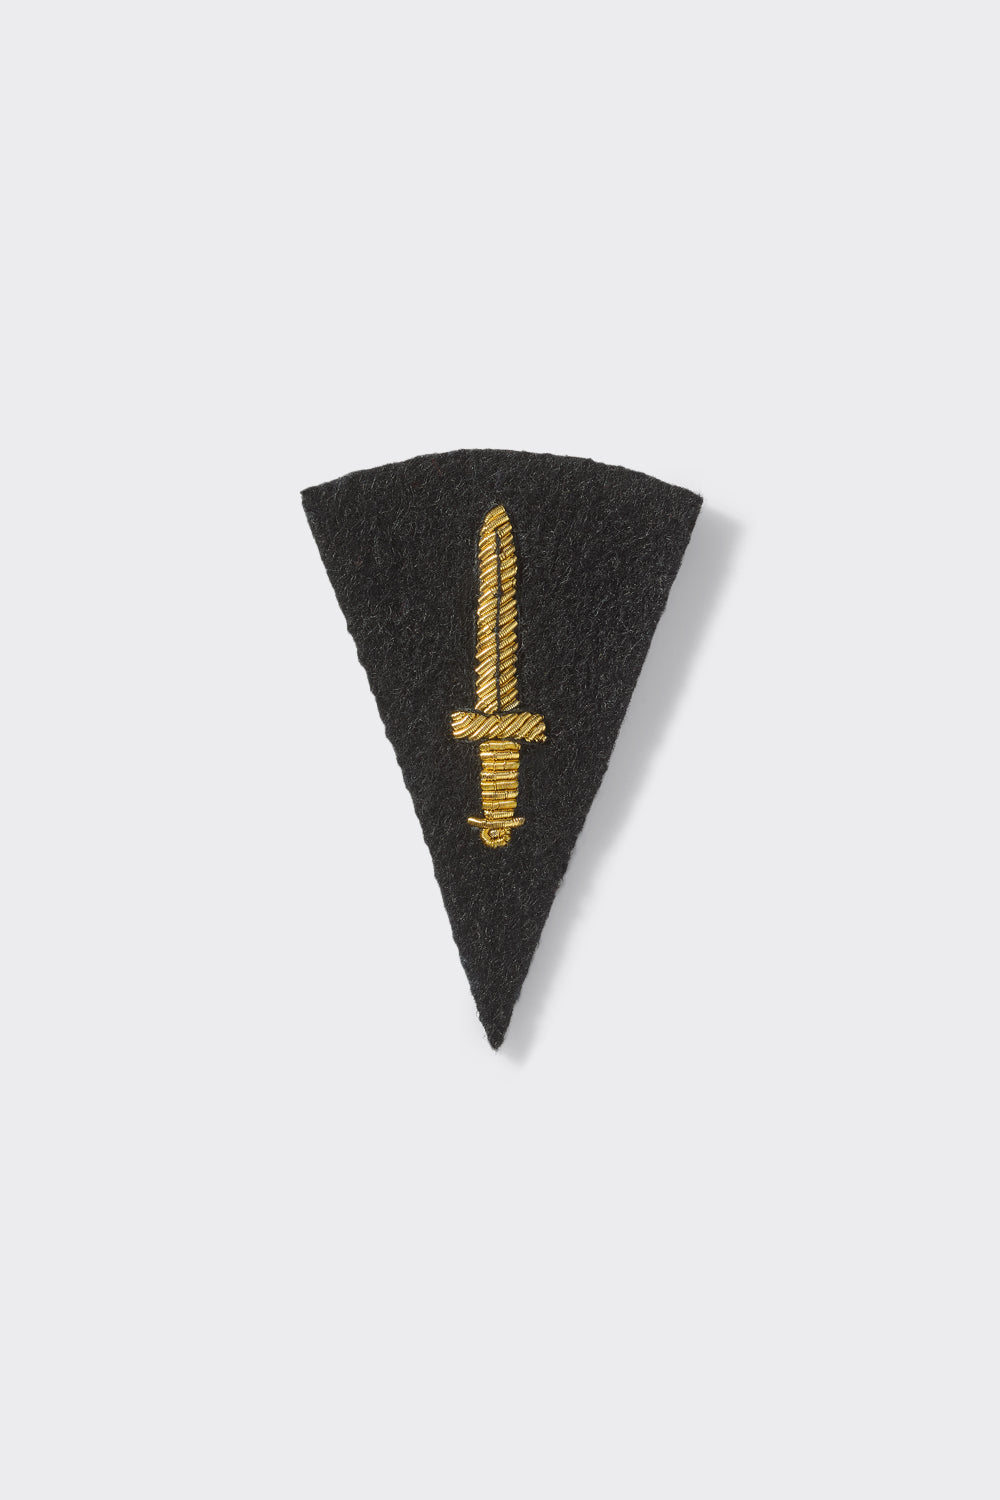 Commando Dagger Badge - Small